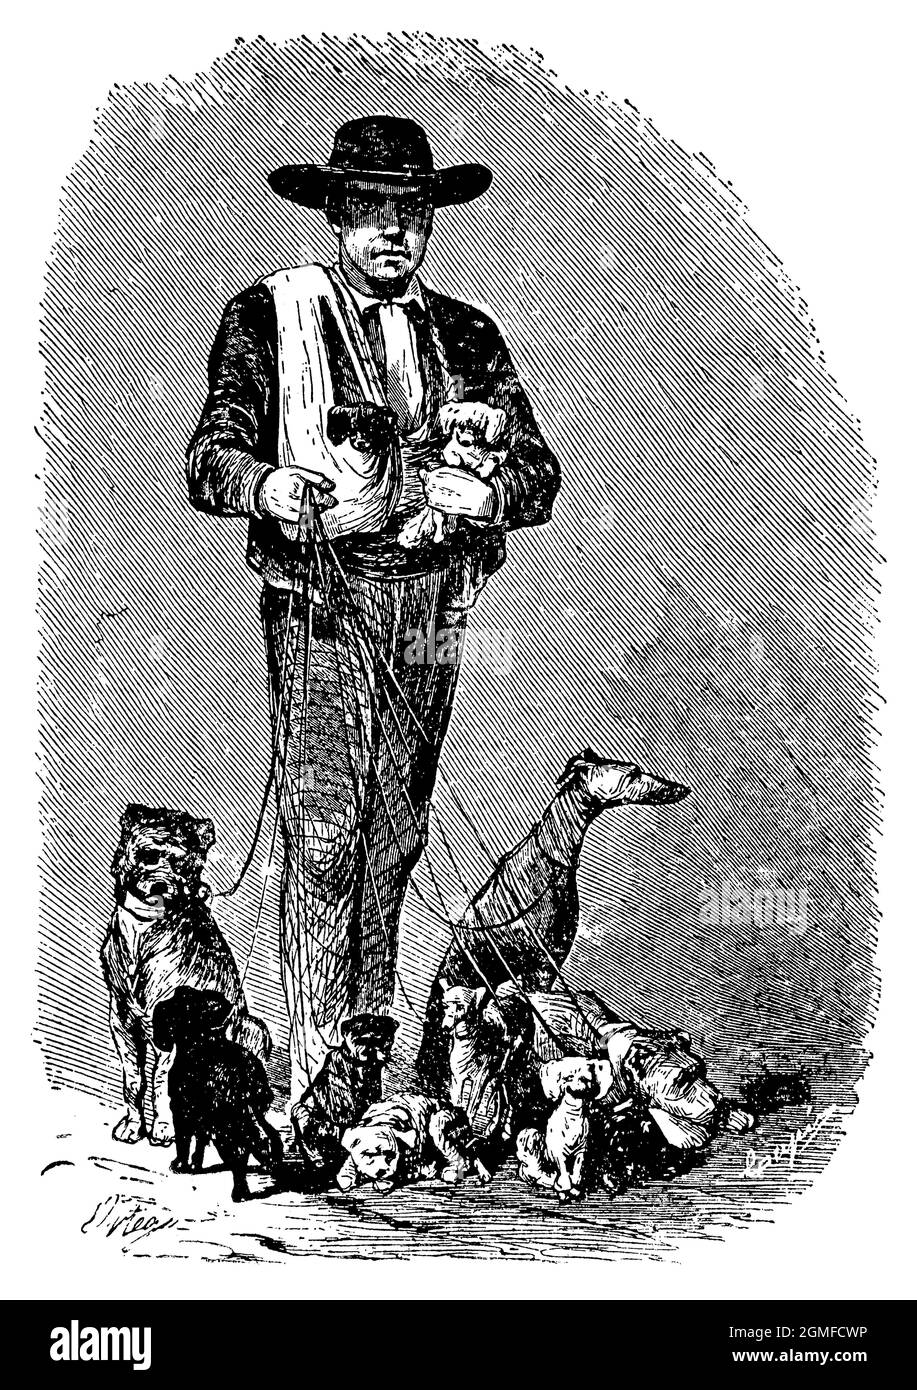 España. Siglo XIX. Comercio ambulante. Vendedor de perros y animales domésticos. Grabado de 1940. Stock Photo